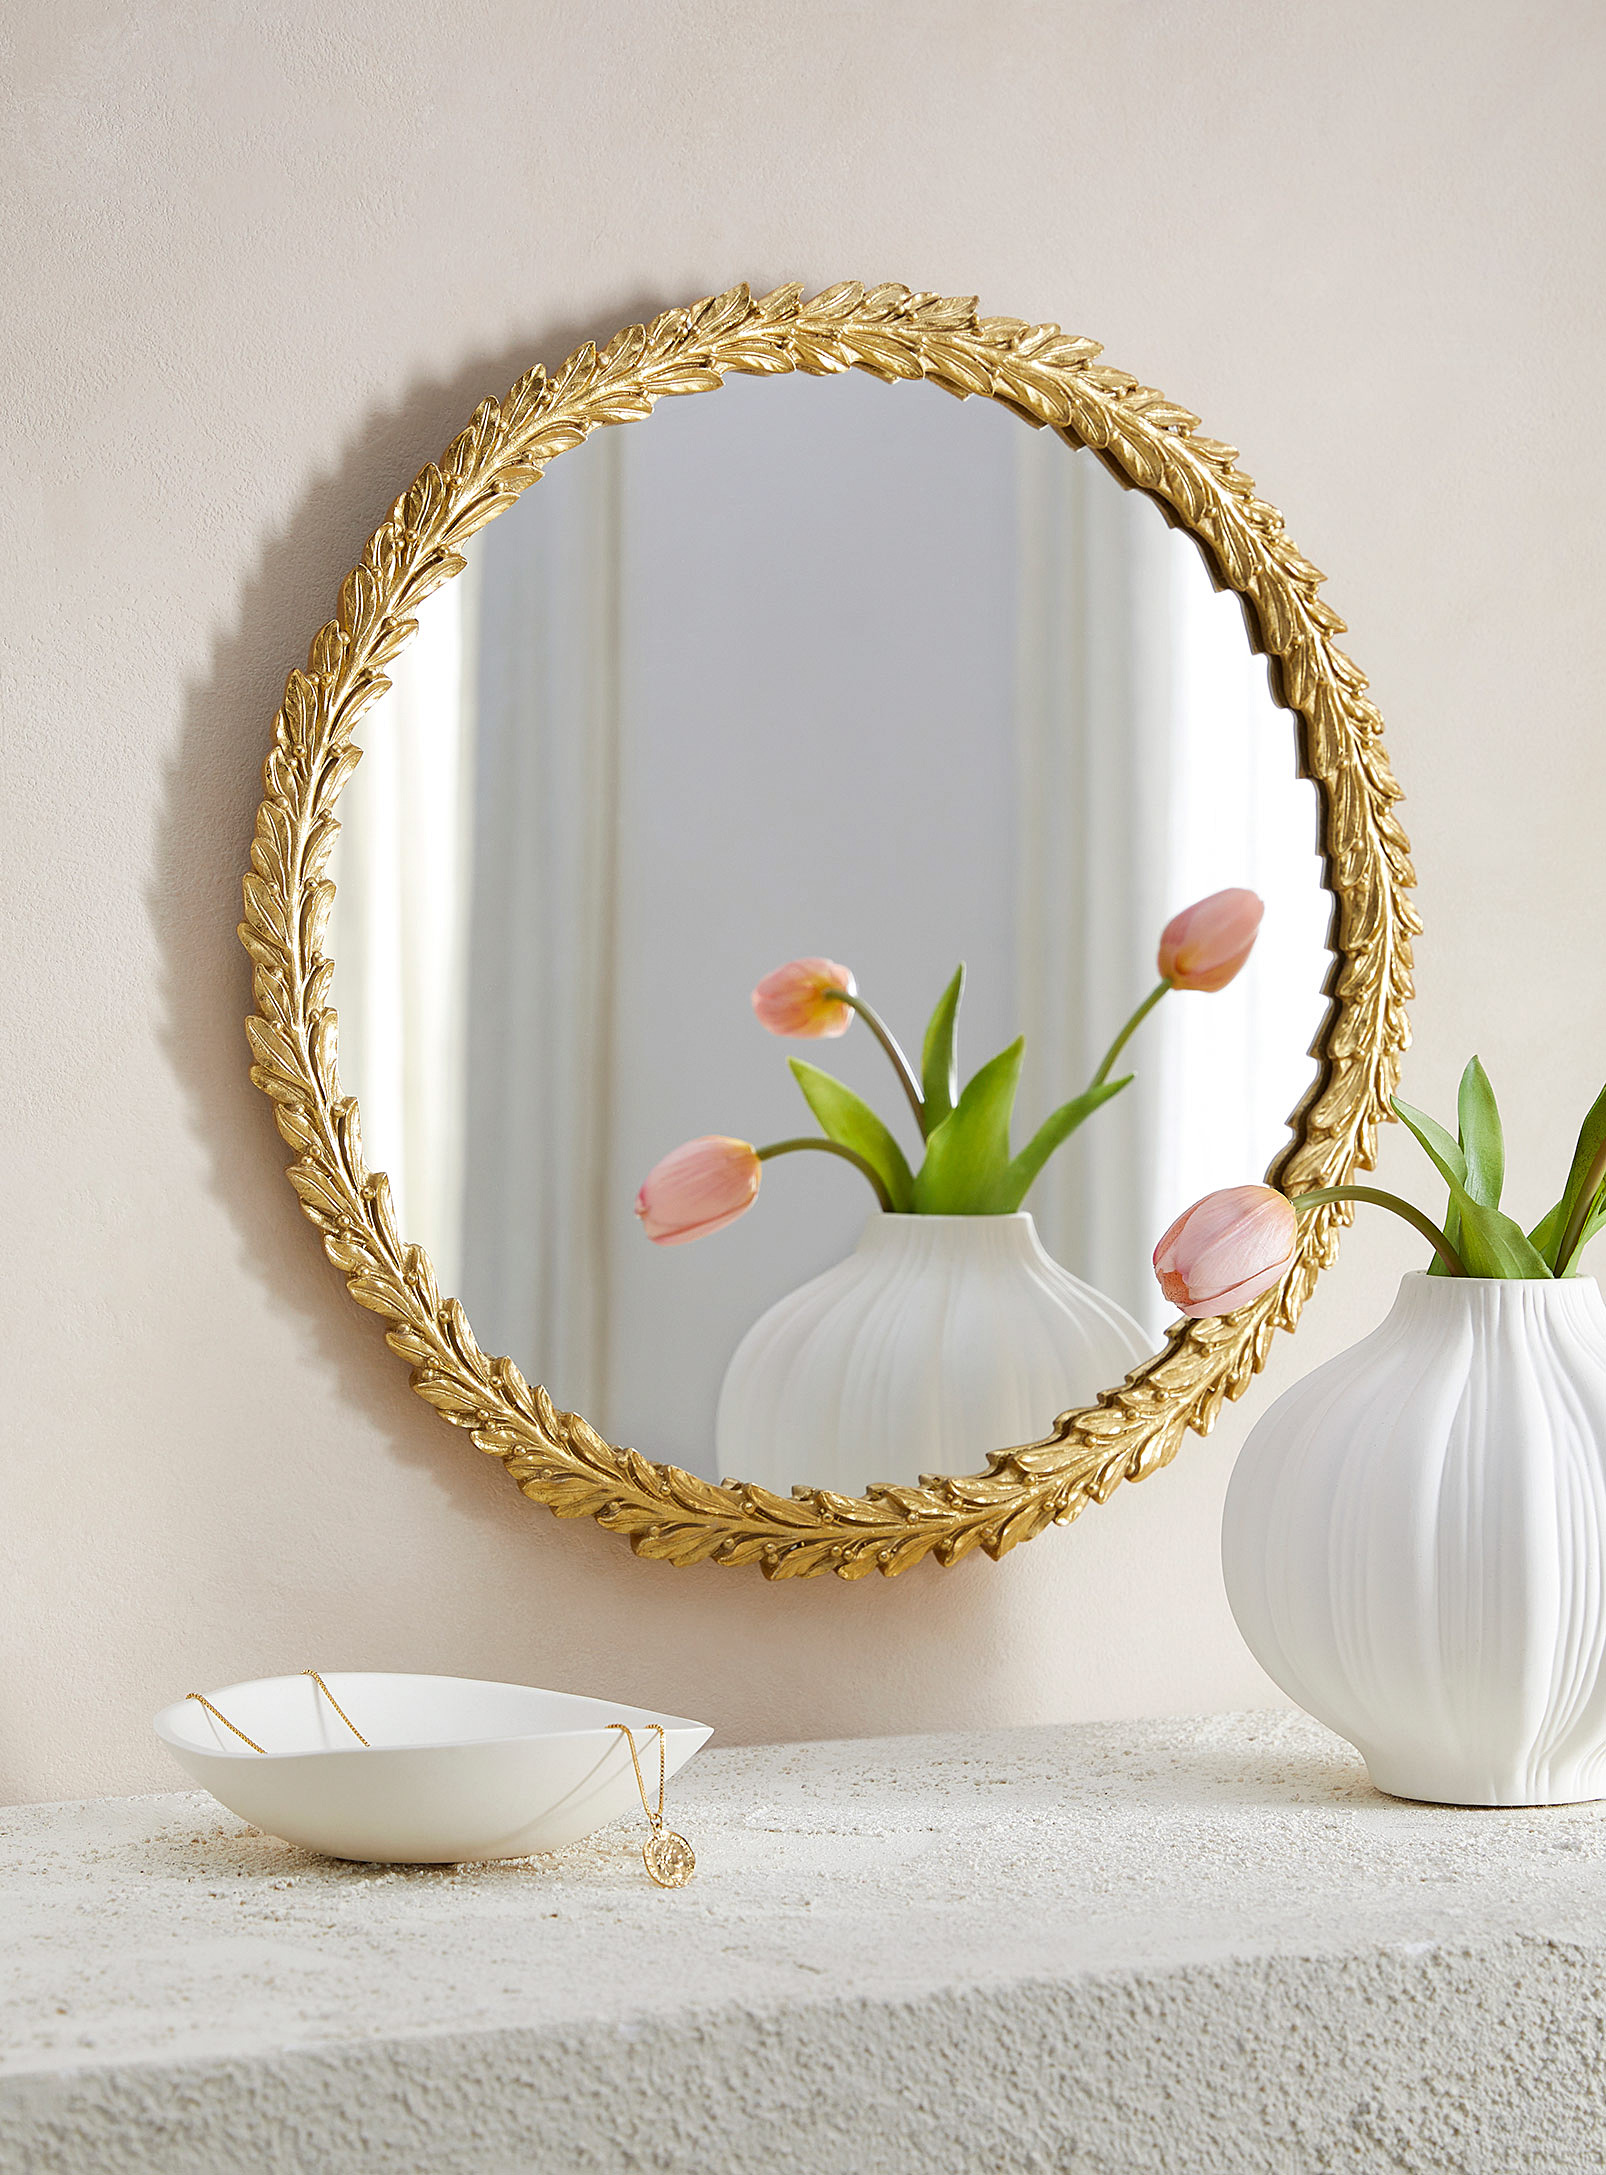 Simons Maison - Golden crown round mirror